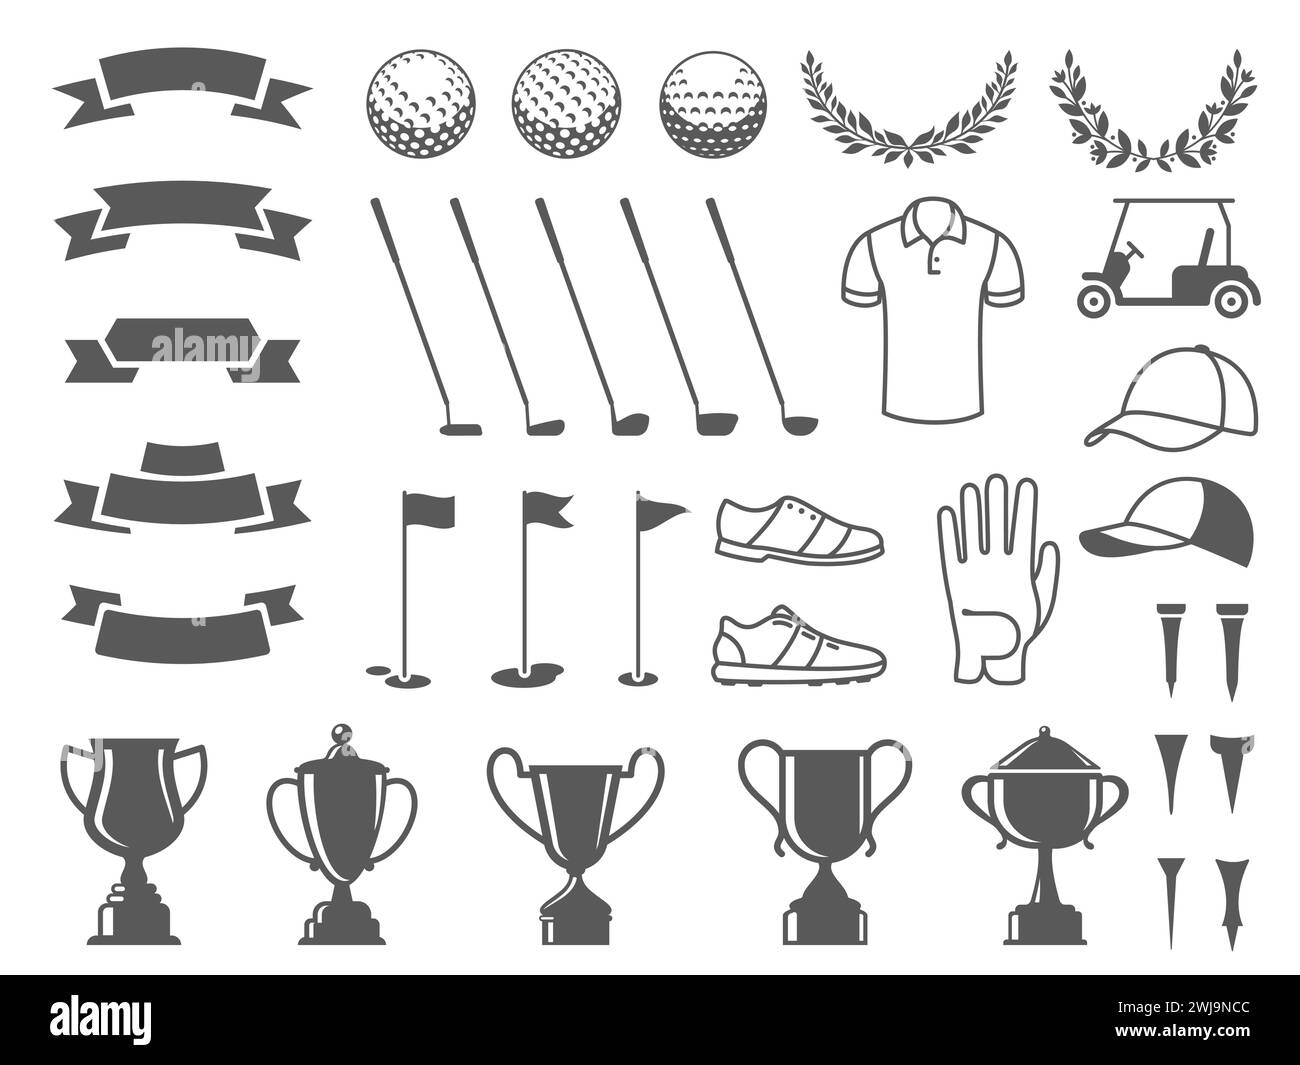 Golf Elements Kollektion. T-Symbole, Ballsilhouetten, Becheraufkleber und -Bänder, Kugelmarker und Putter-Abzeichen. Vektorset für sportliche Spielelemente Stock Vektor